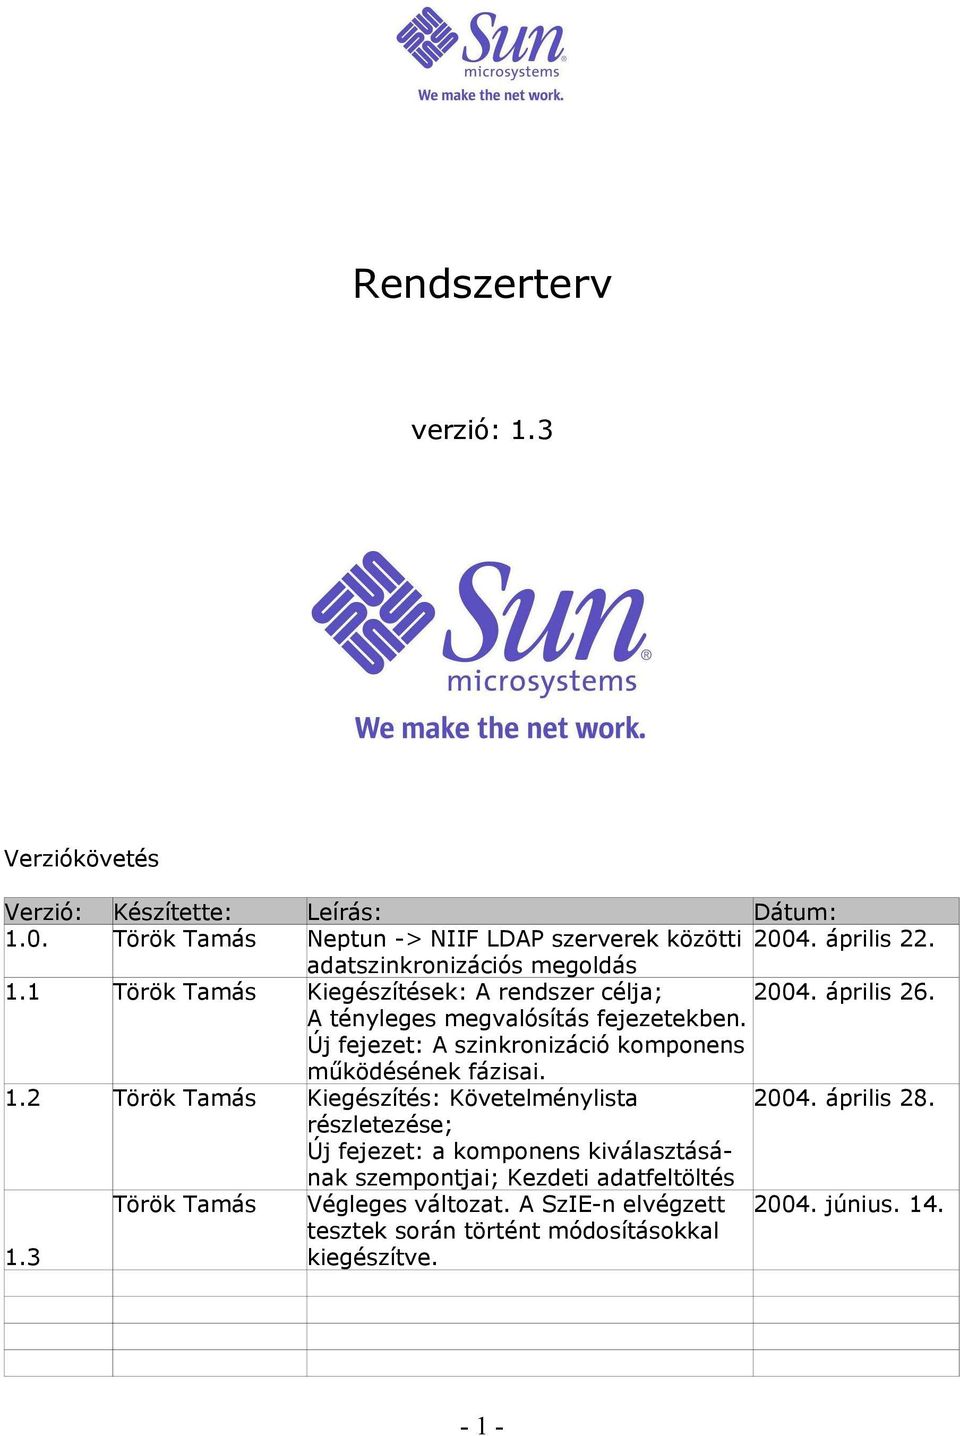 Új fejezet: A szinkronizáció komponens működésének fázisai. 1.2 Török Tamás Kiegészítés: Követelménylista 2004. április 28.